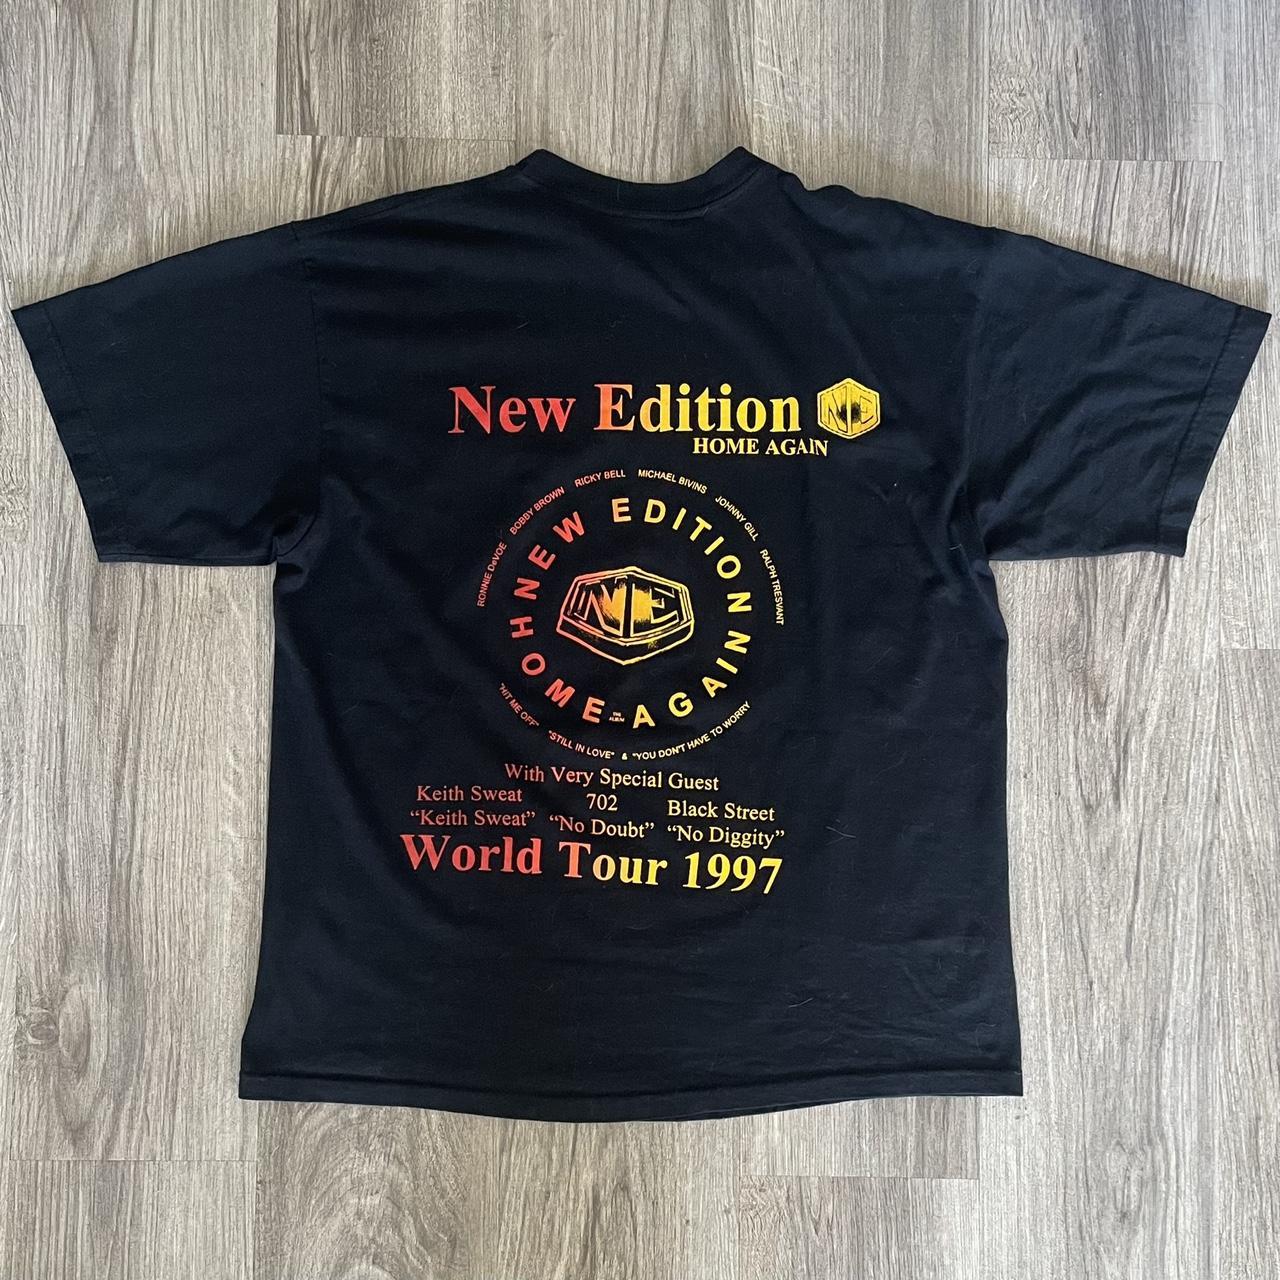 90's NEW EDITION HOME AGAIN tシャツおいくらぐらい希望でしょうか